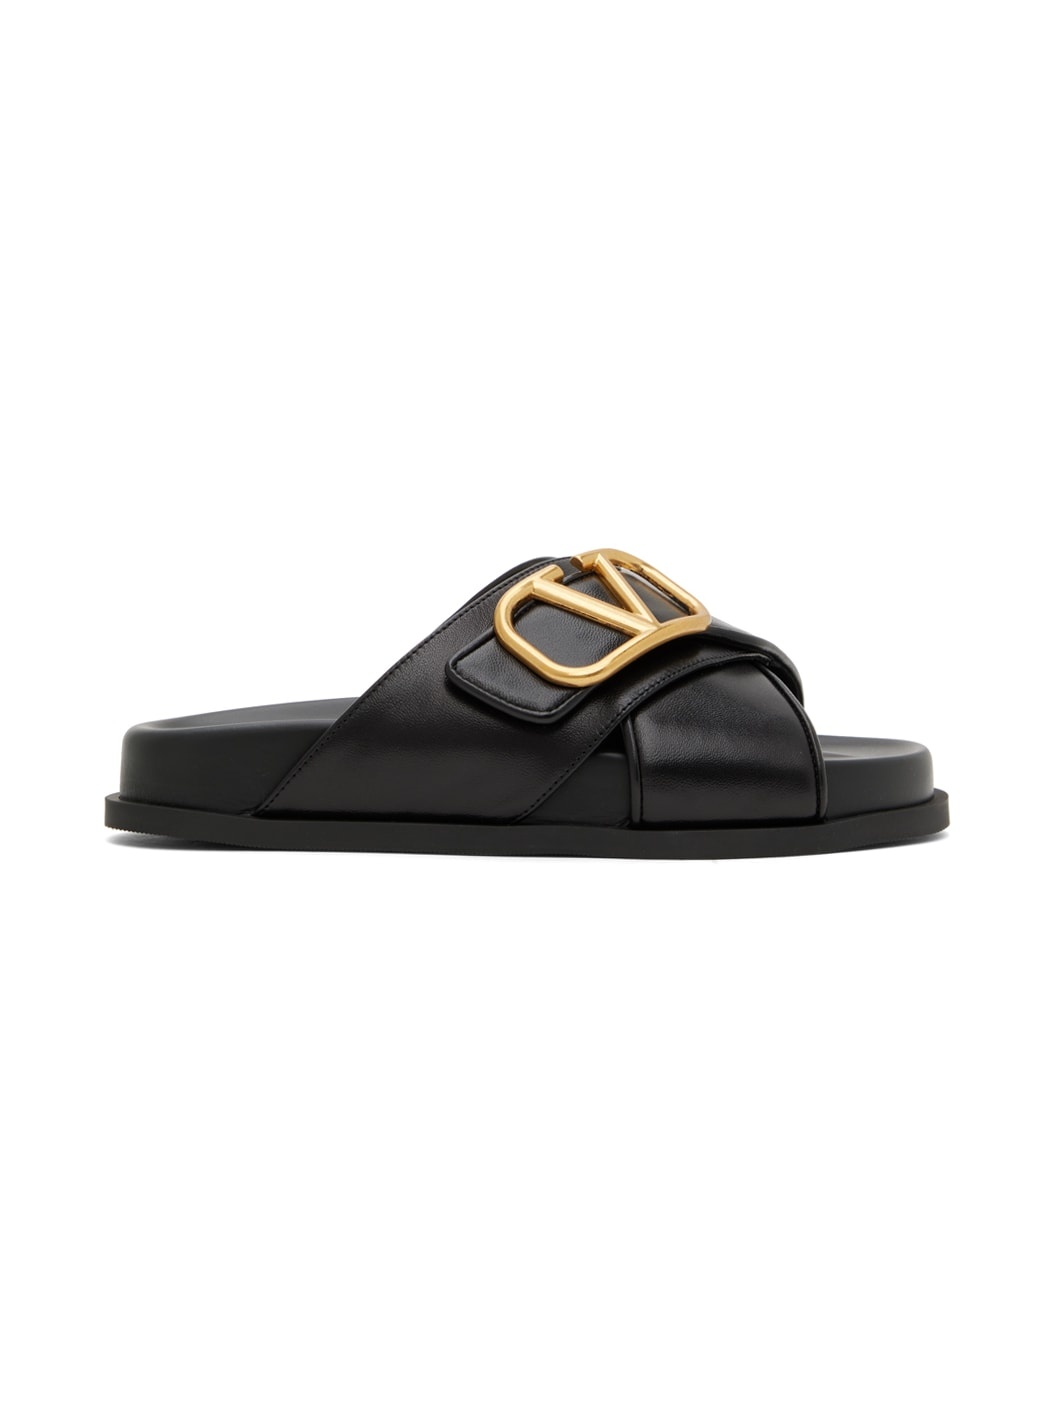 Black VLogo Sandals - 1